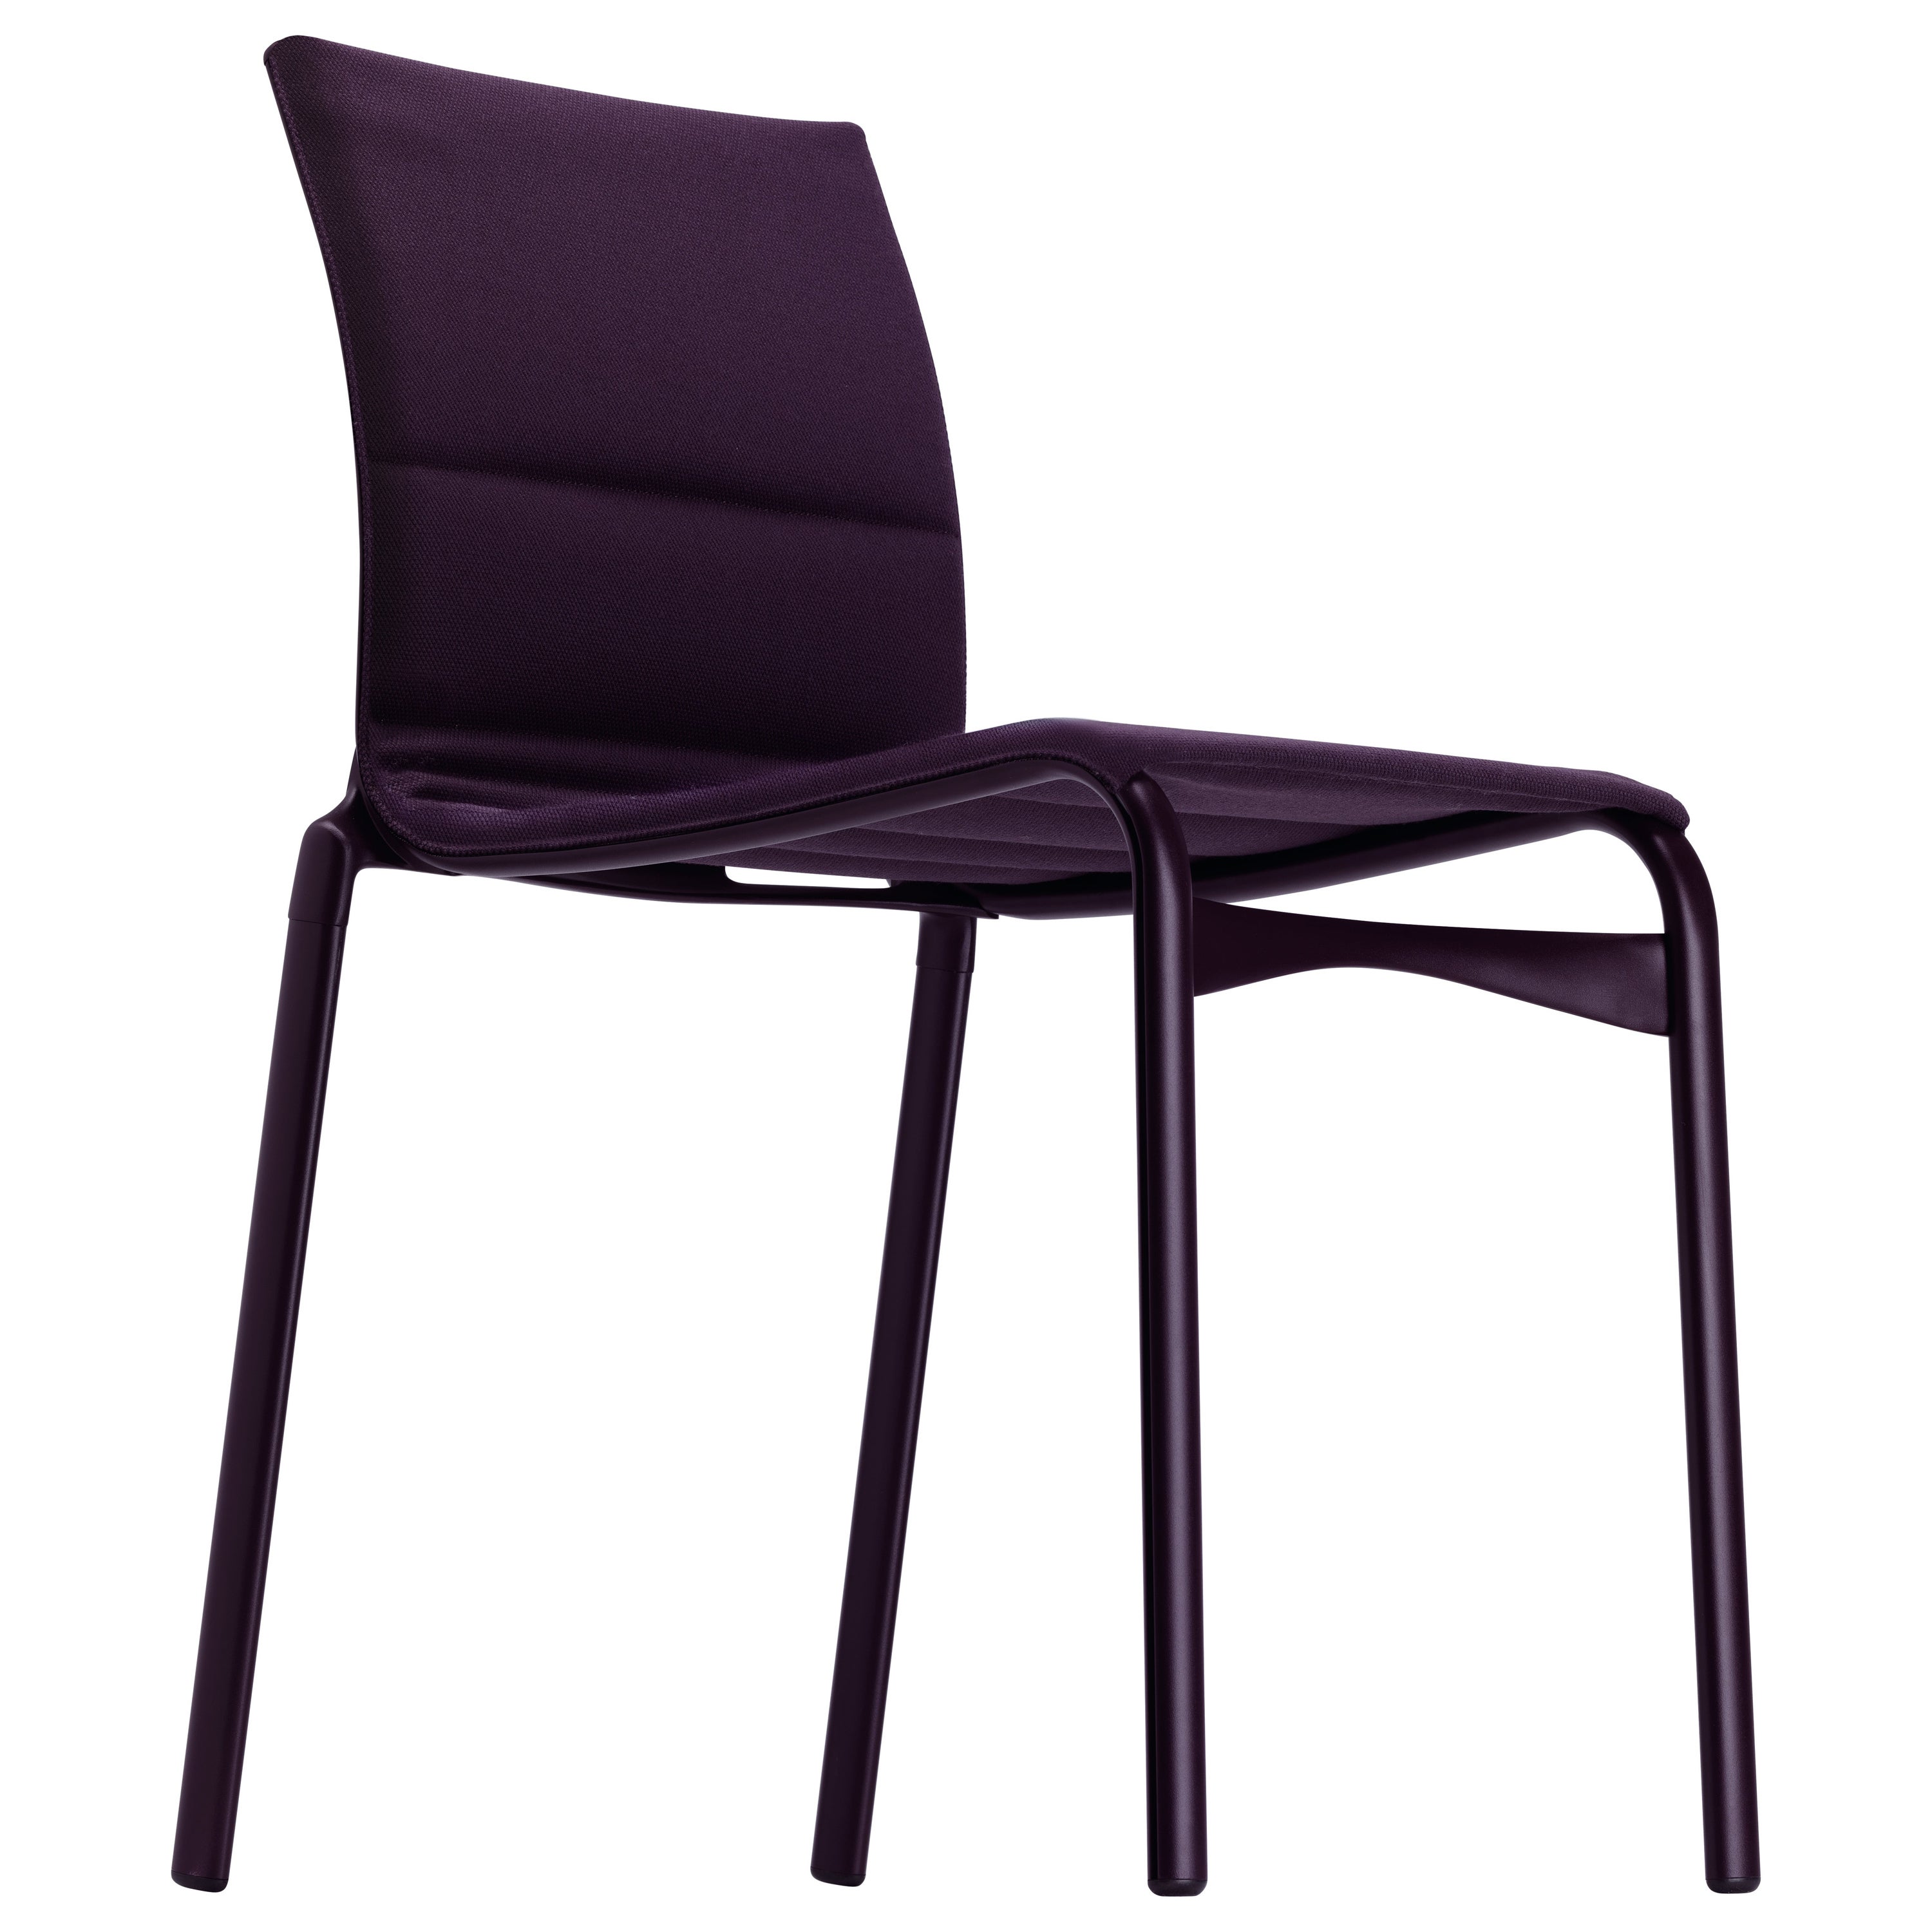 Chaise à haut cadre Alias 40 avec assise violette et cadre en aluminium laqué aubergine